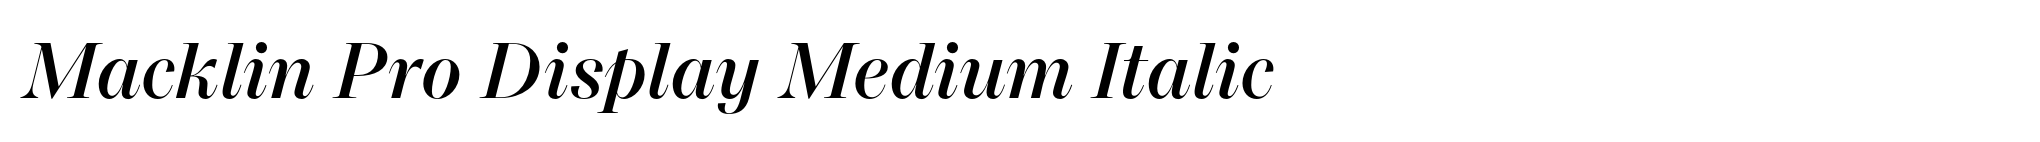 Macklin Pro Display Medium Italic image